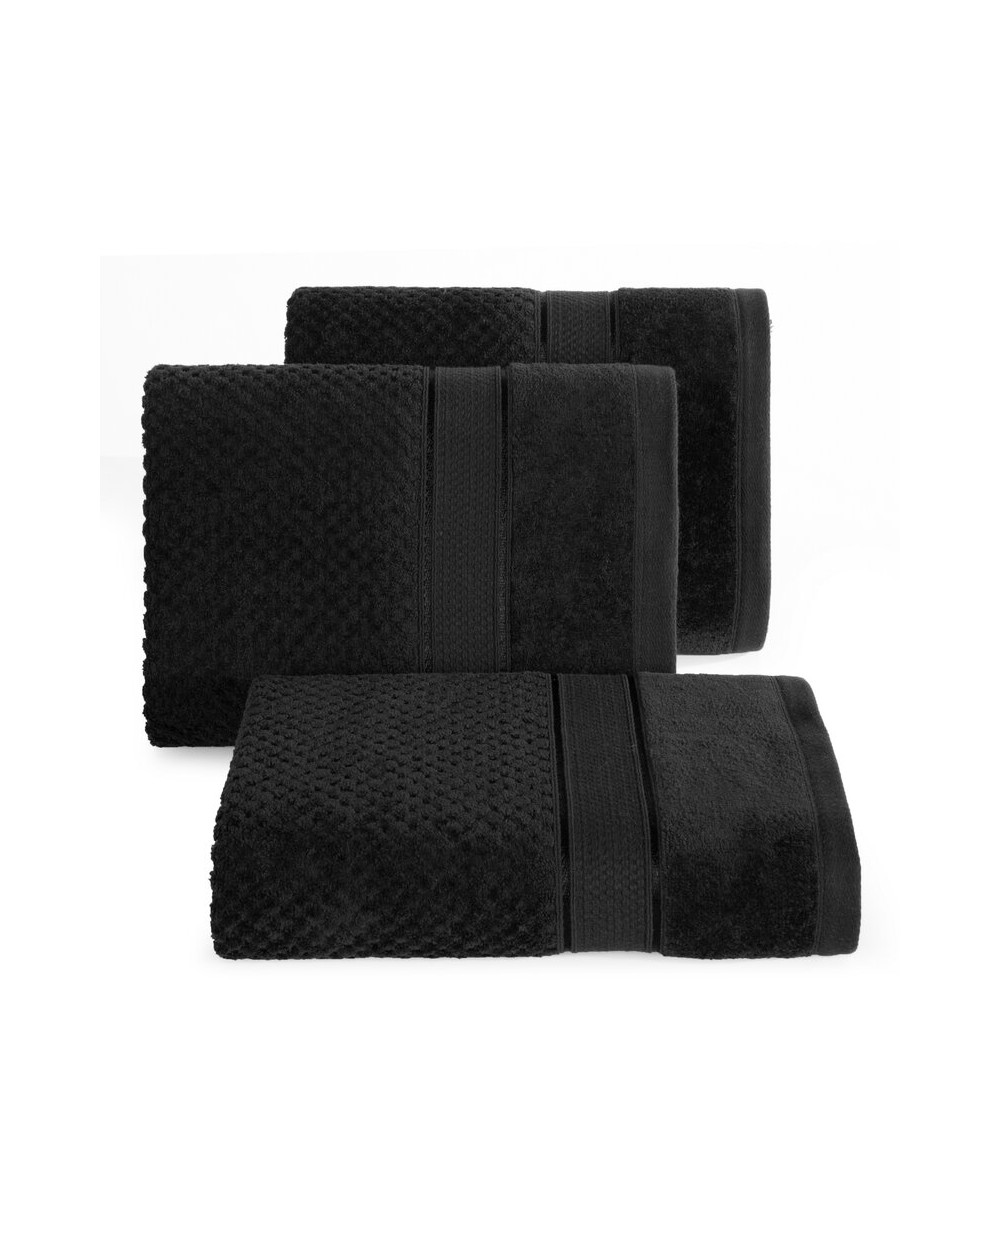 Ręcznik bawełna 50x90 Jessi 06 czarny Eurofirany